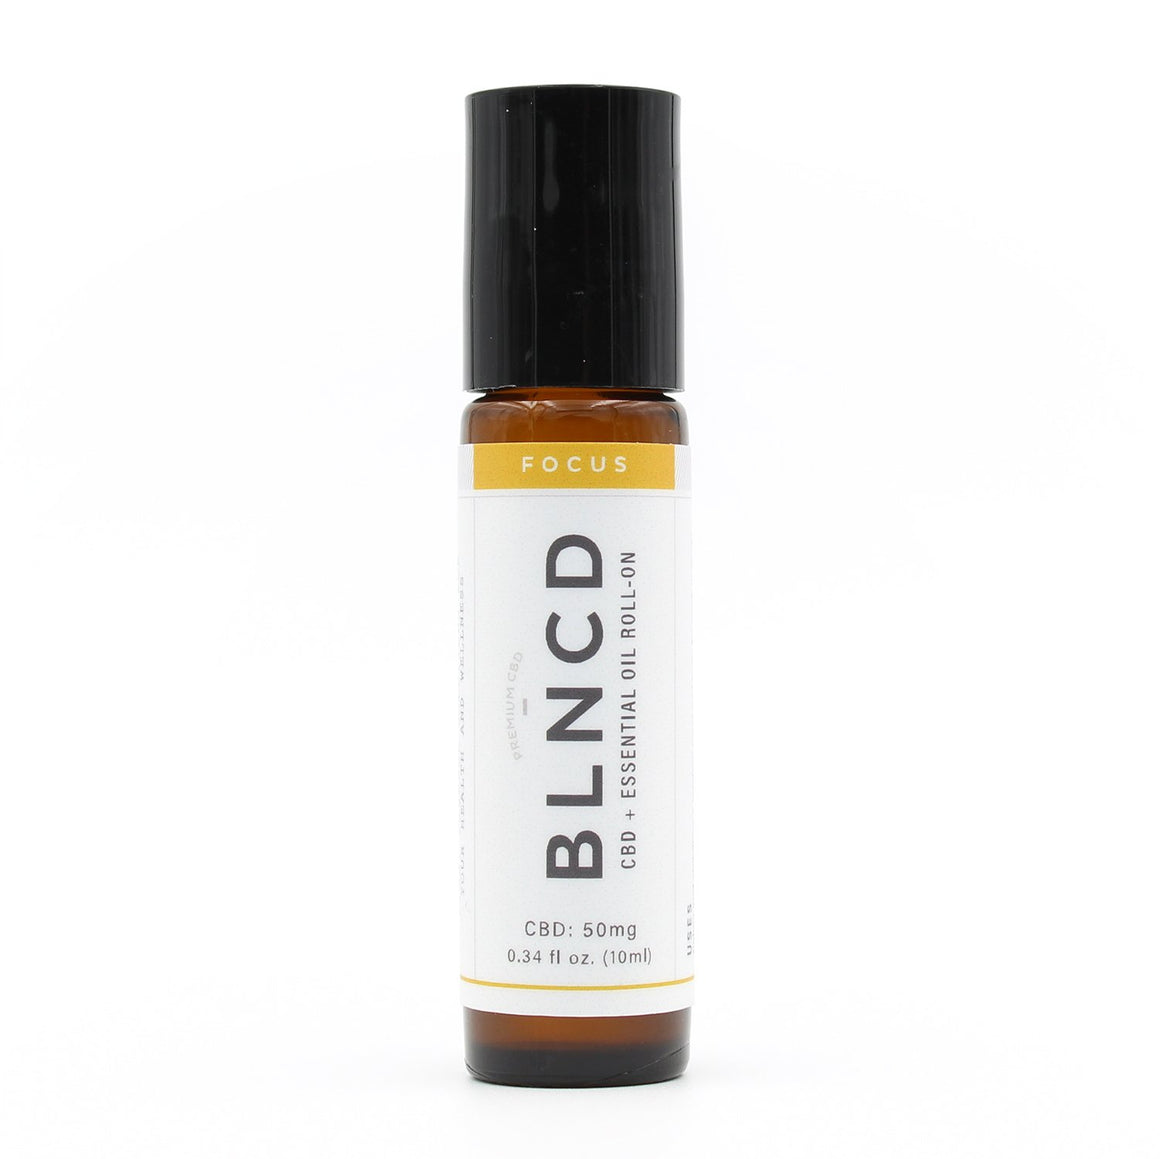 BLNCD Naturals CBD Oil Roll On -  Focus at Modest Hemp Co.